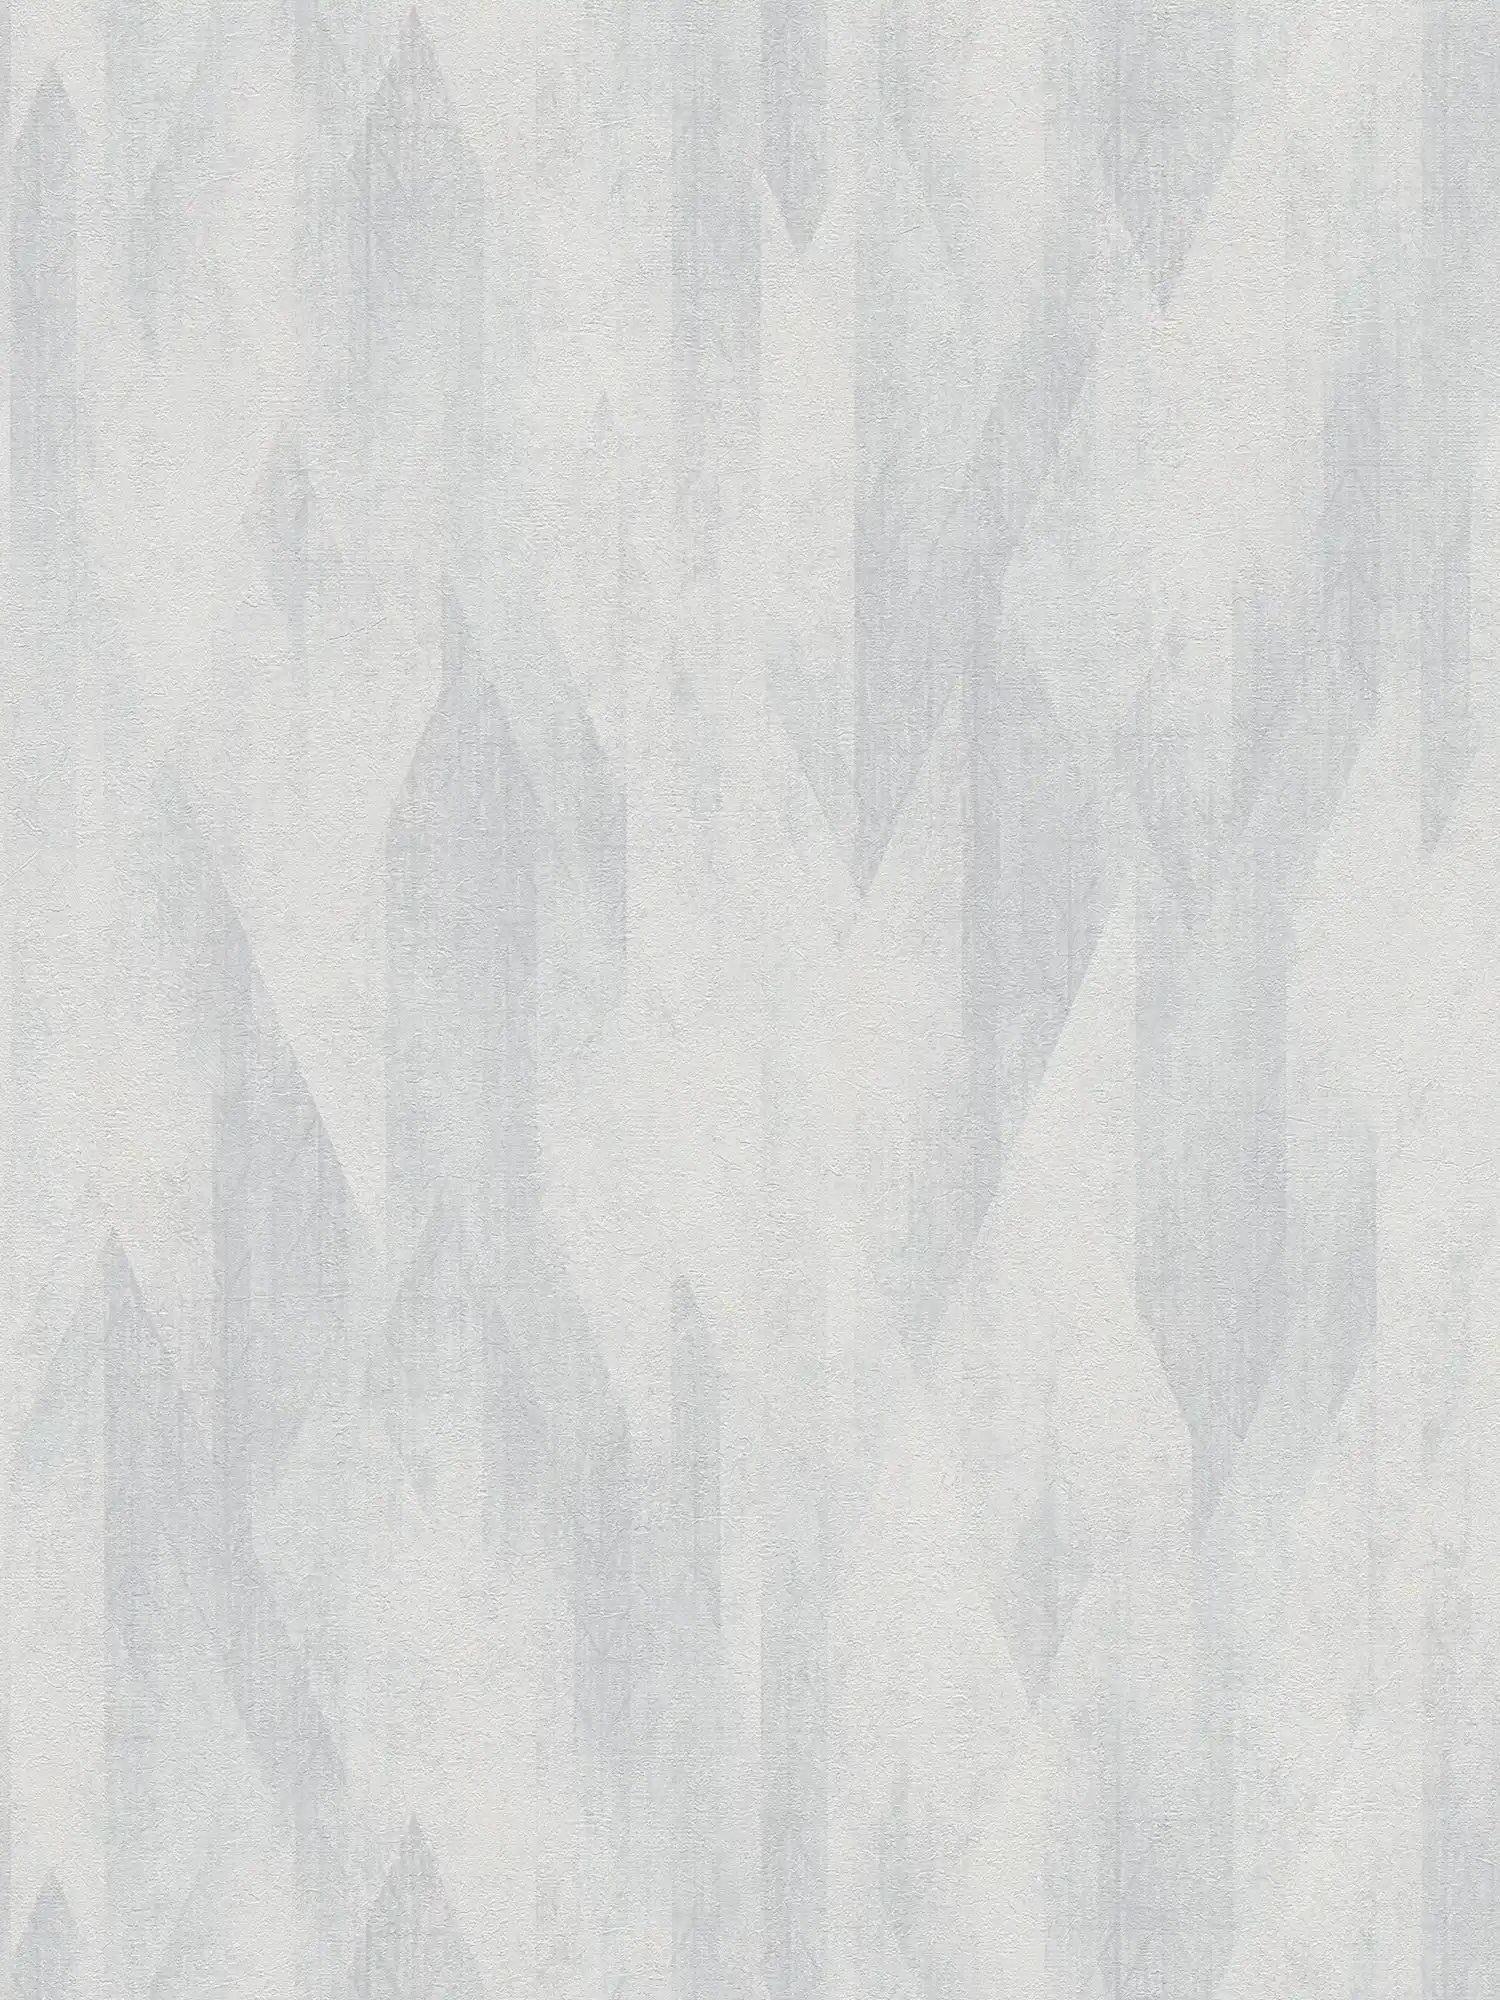 Carta da parati grafica in tessuto non tessuto con sottile motivo a rombi - grigio, bianco
